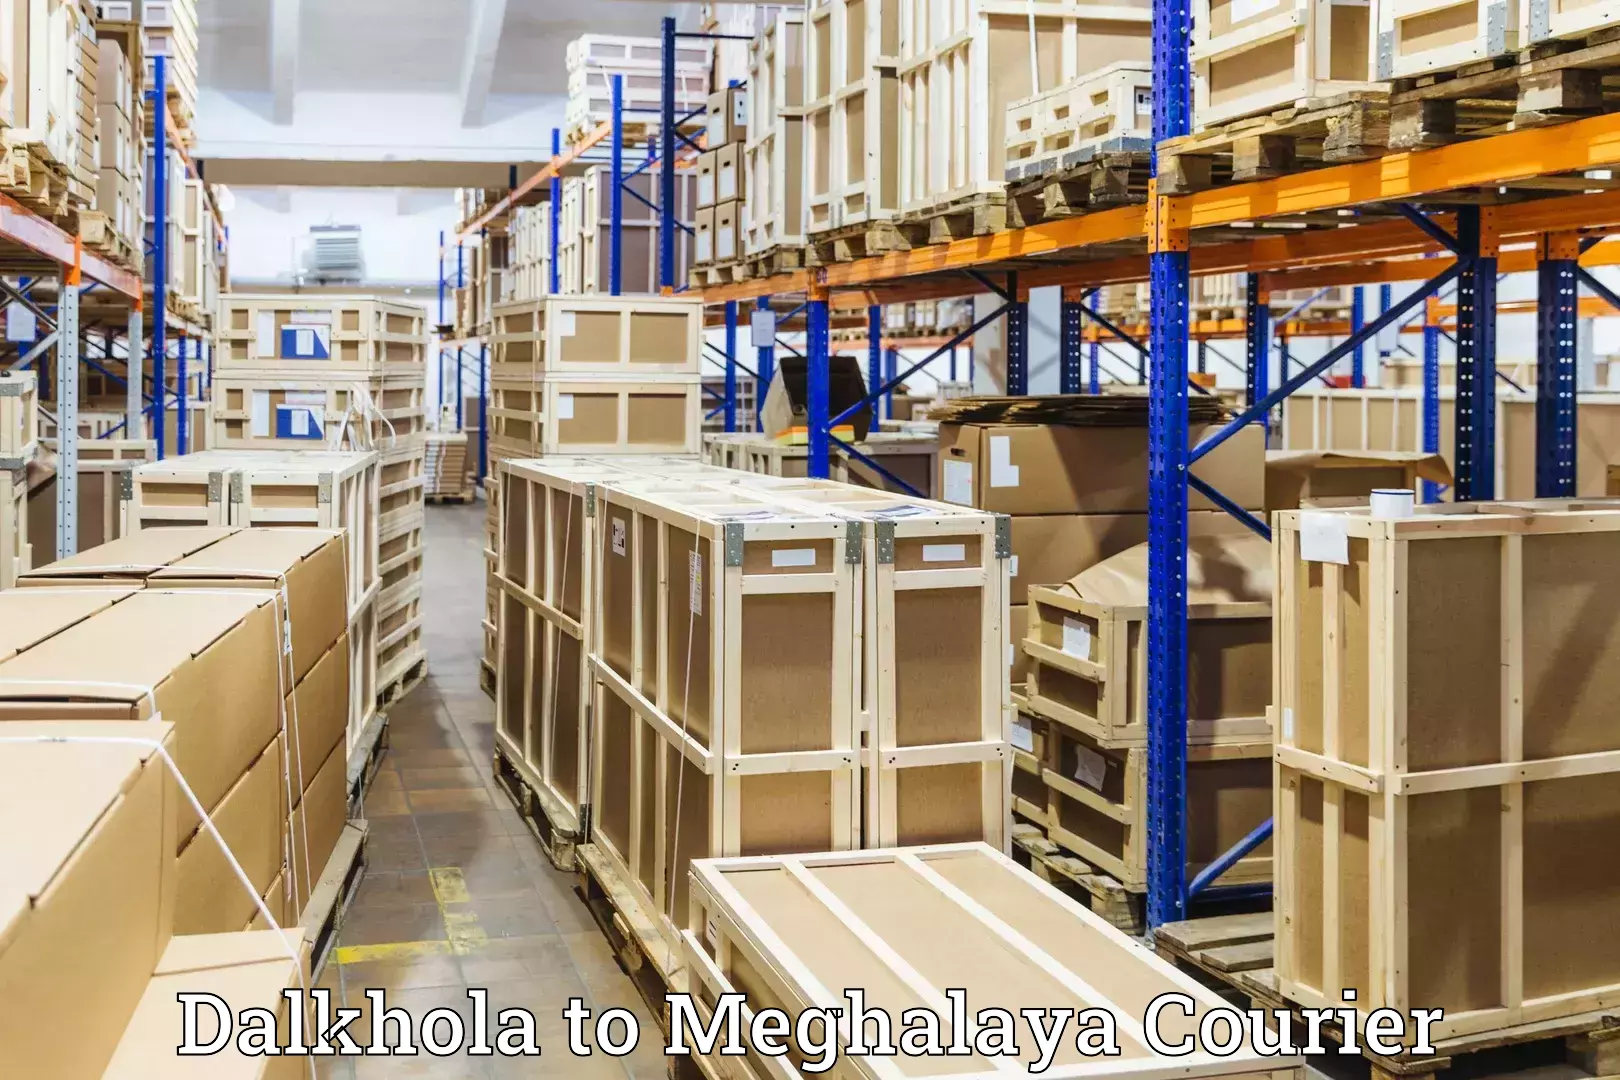 Urgent luggage shipment Dalkhola to Dkhiah West